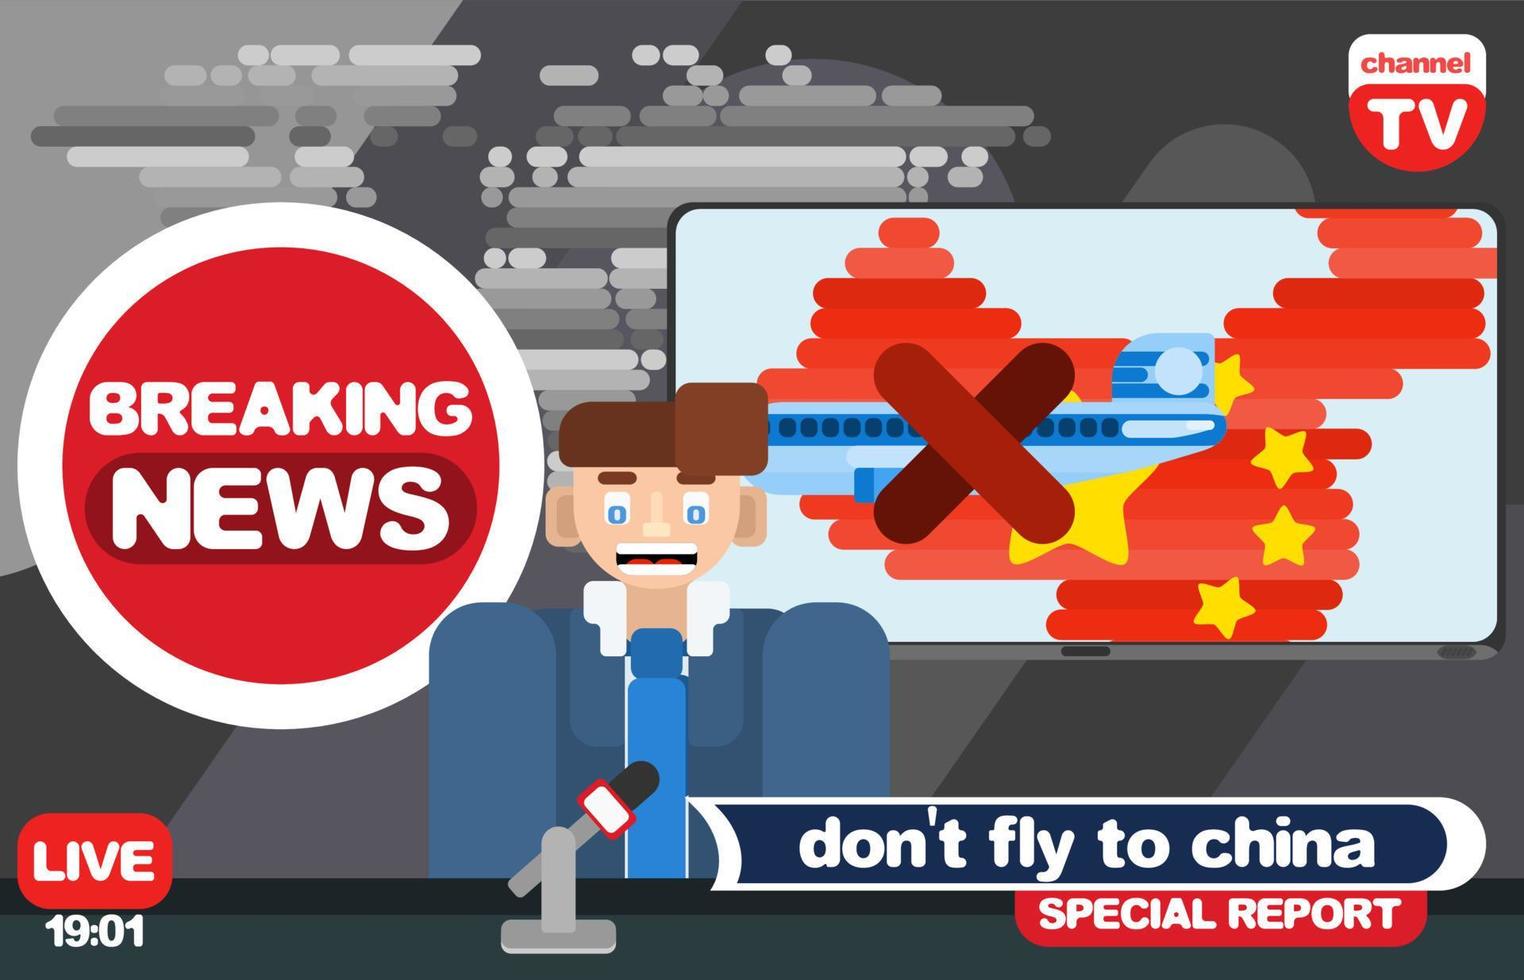 notícias de televisão de estúdio. levar aviões para a China vetor